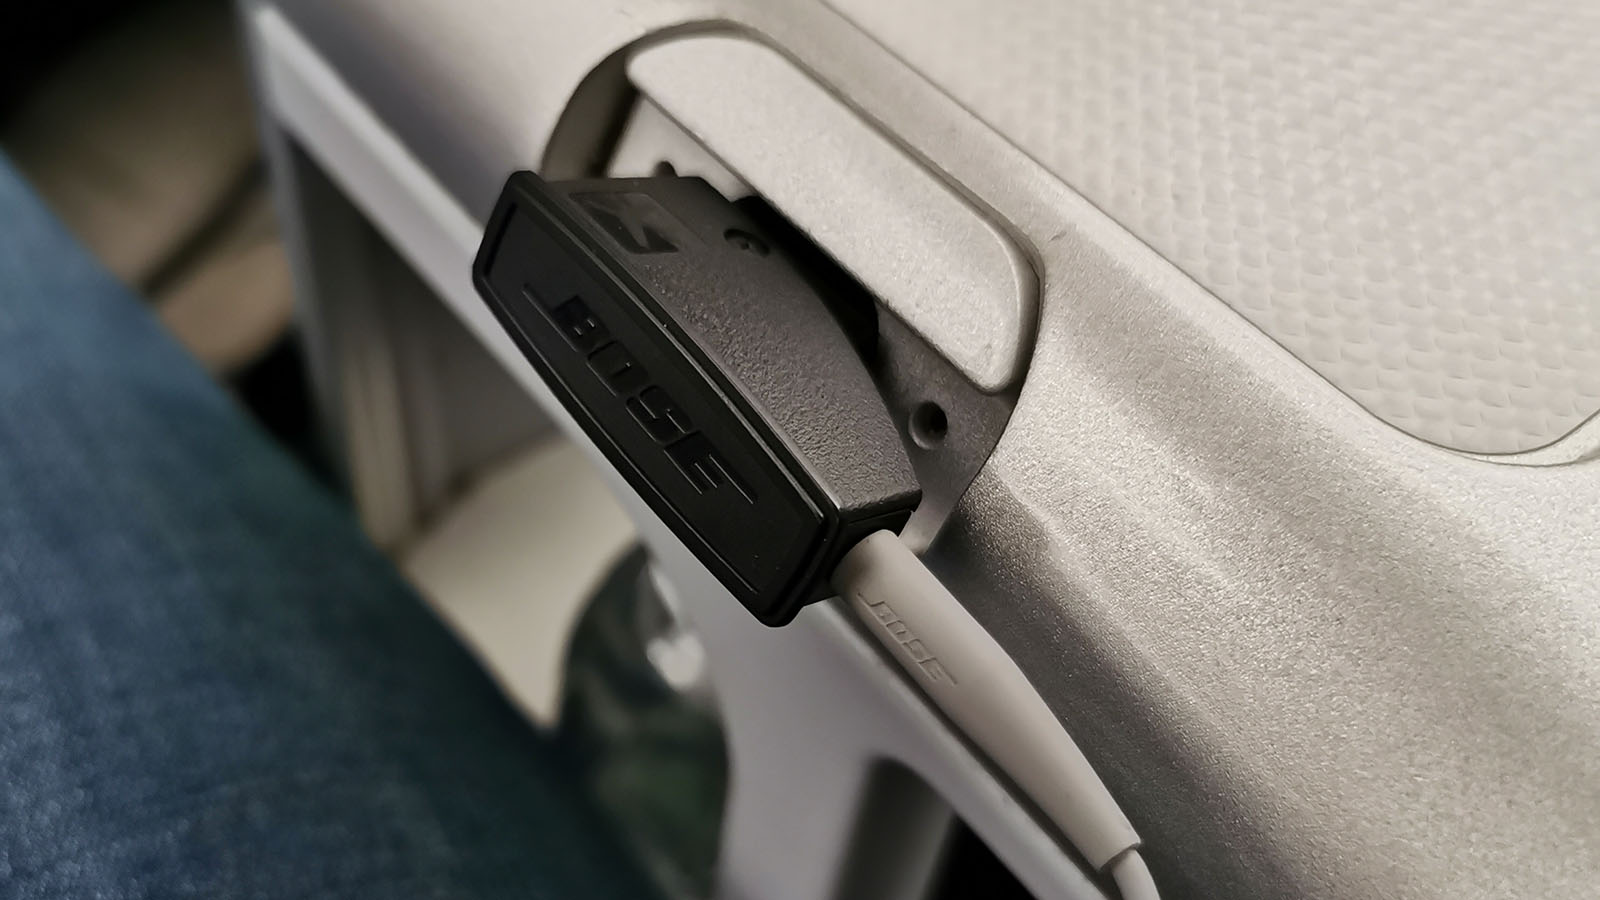 Earphone slot in Delta A330-900neo Comfort+